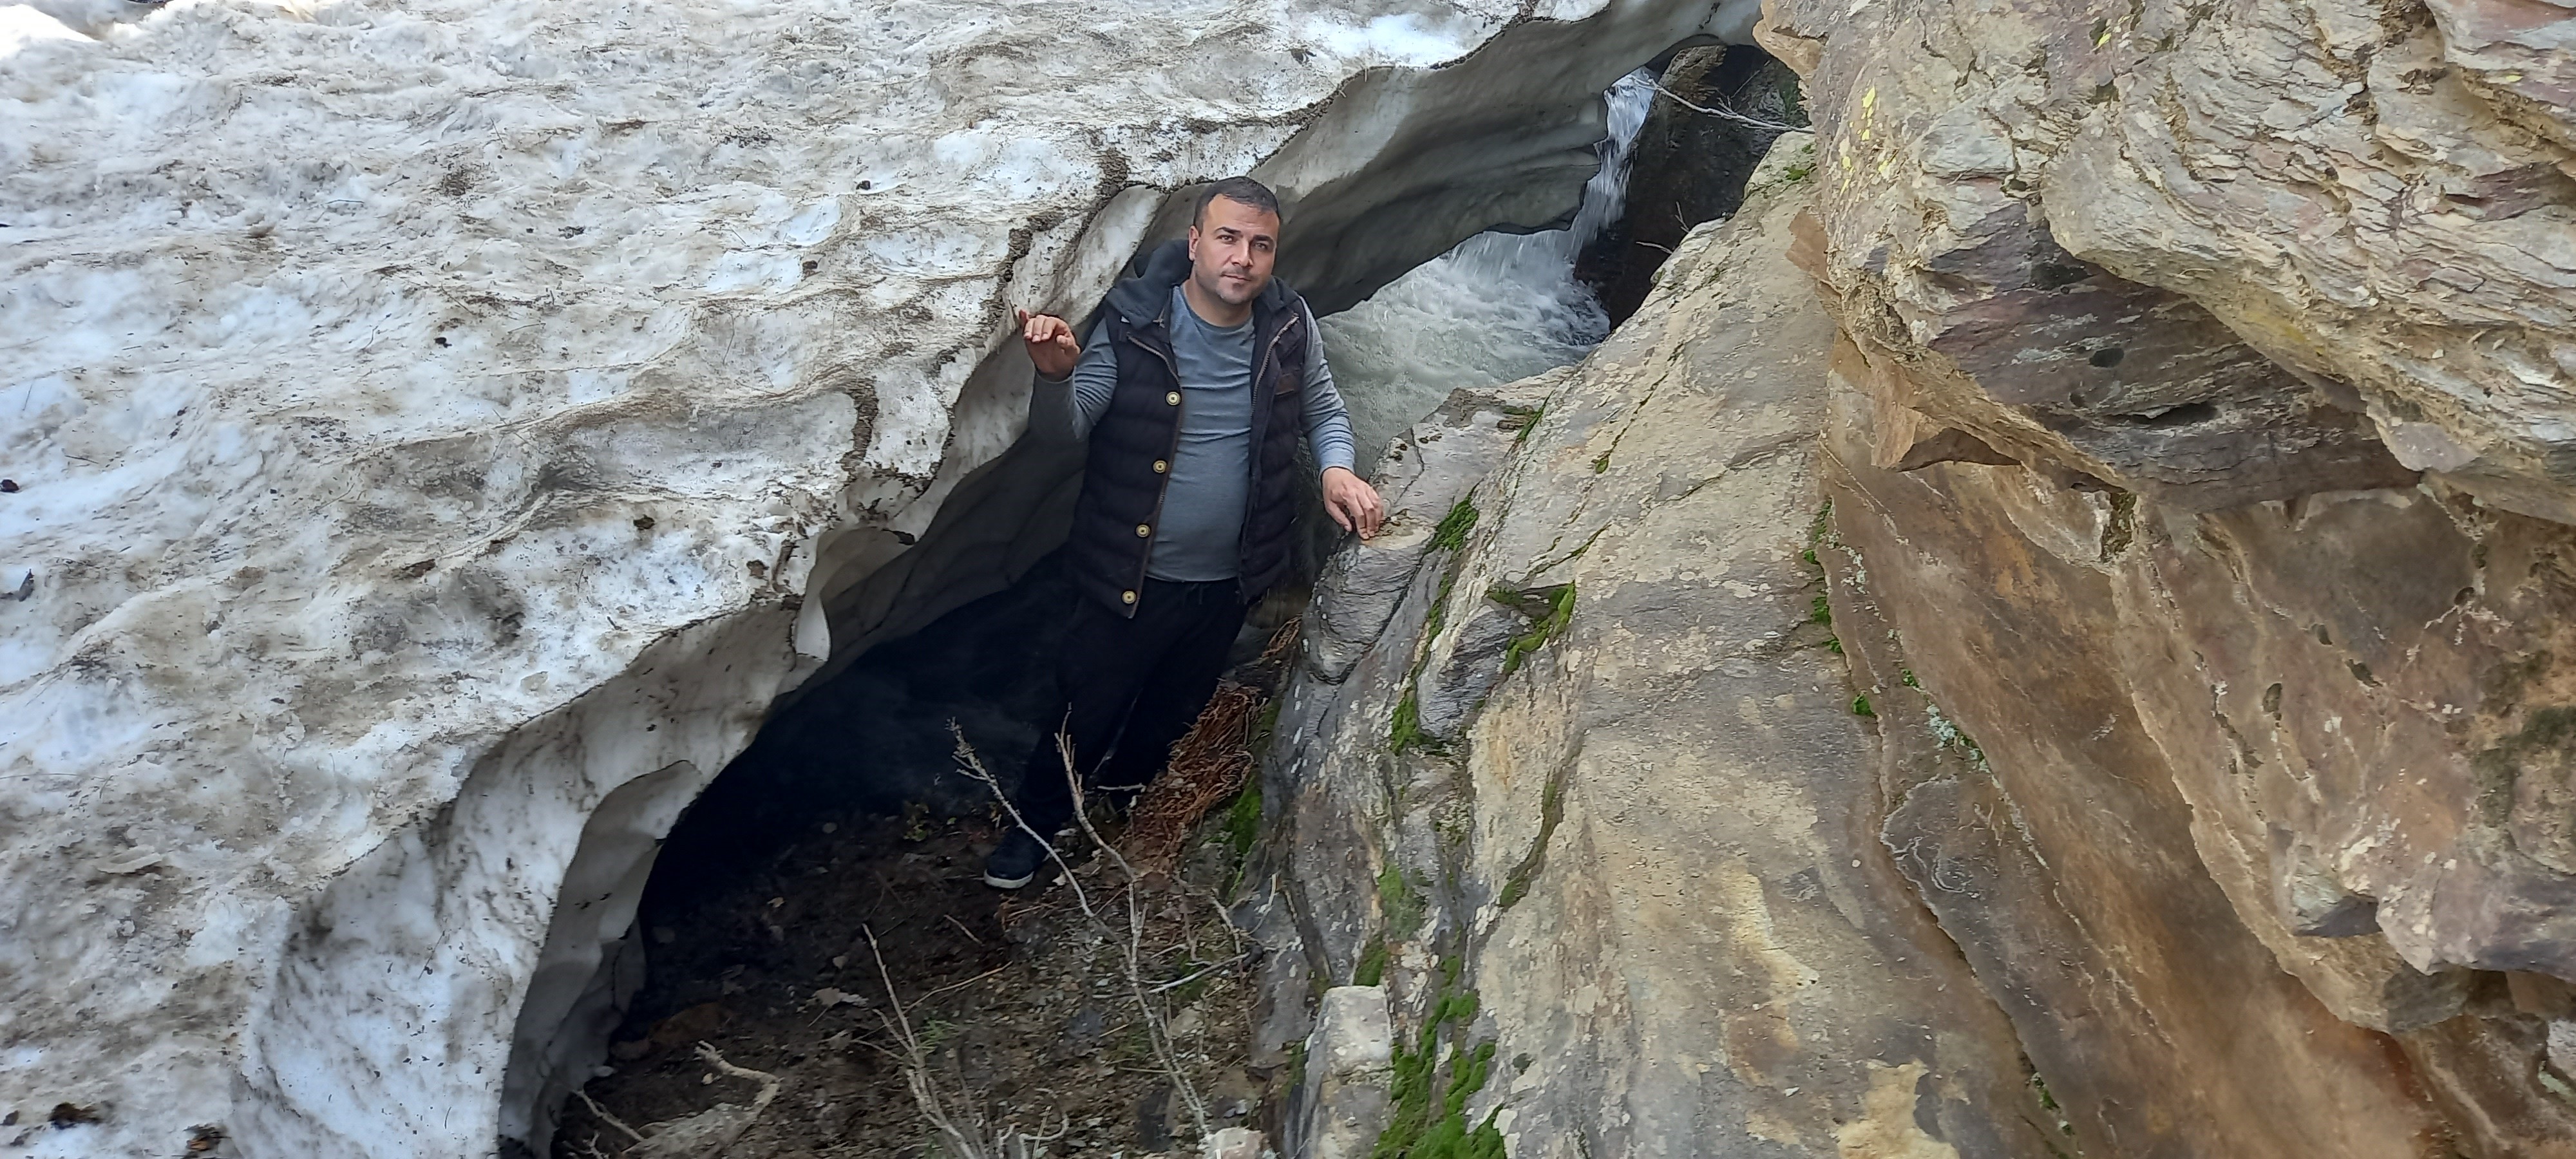 Bitlis'in kar tünelleri buzdan mağaraları andırıyor